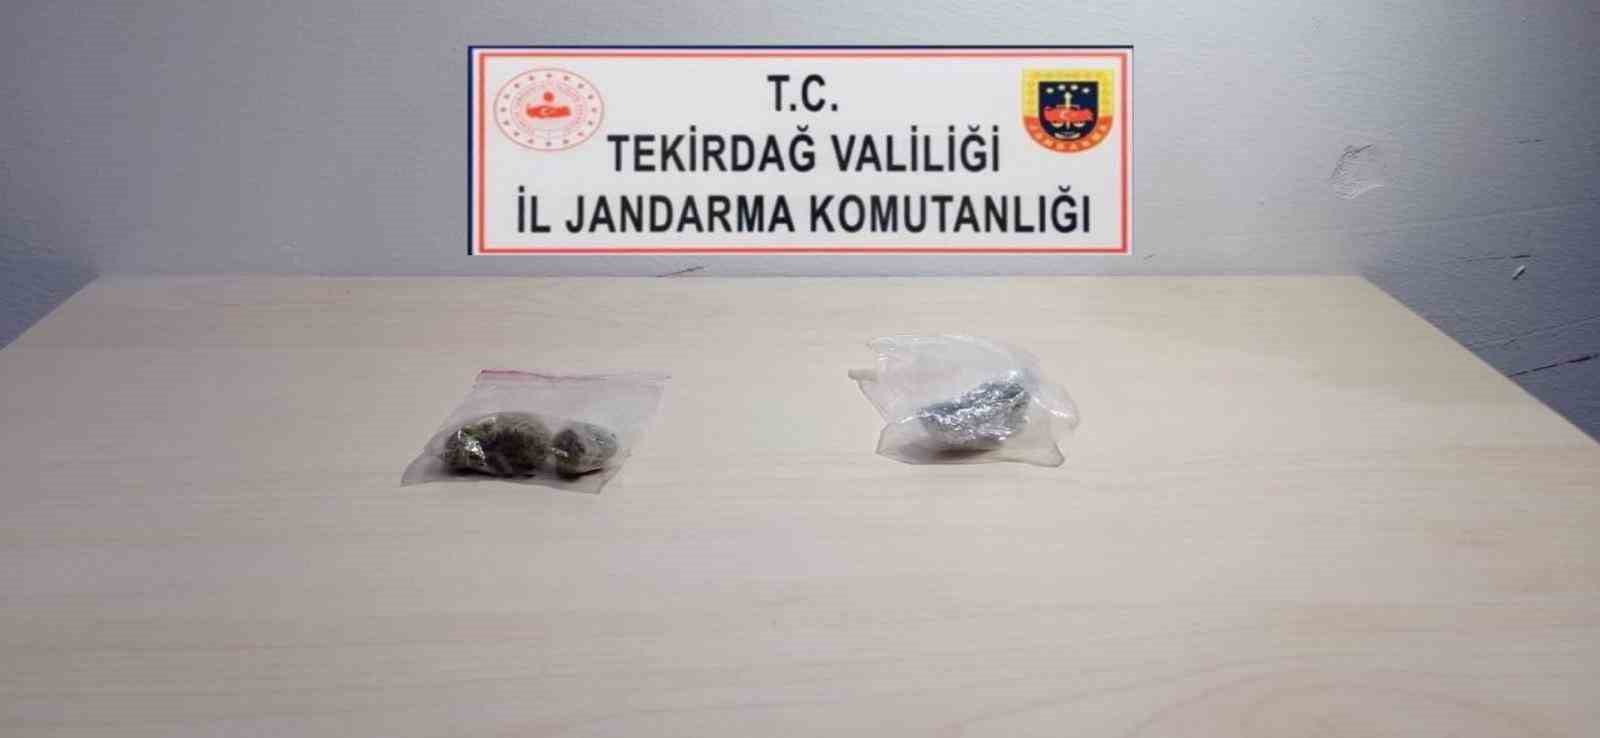 Tekirdağ’da jandarma uyuşturucuya geçit vermiyor: 13 gözaltı
